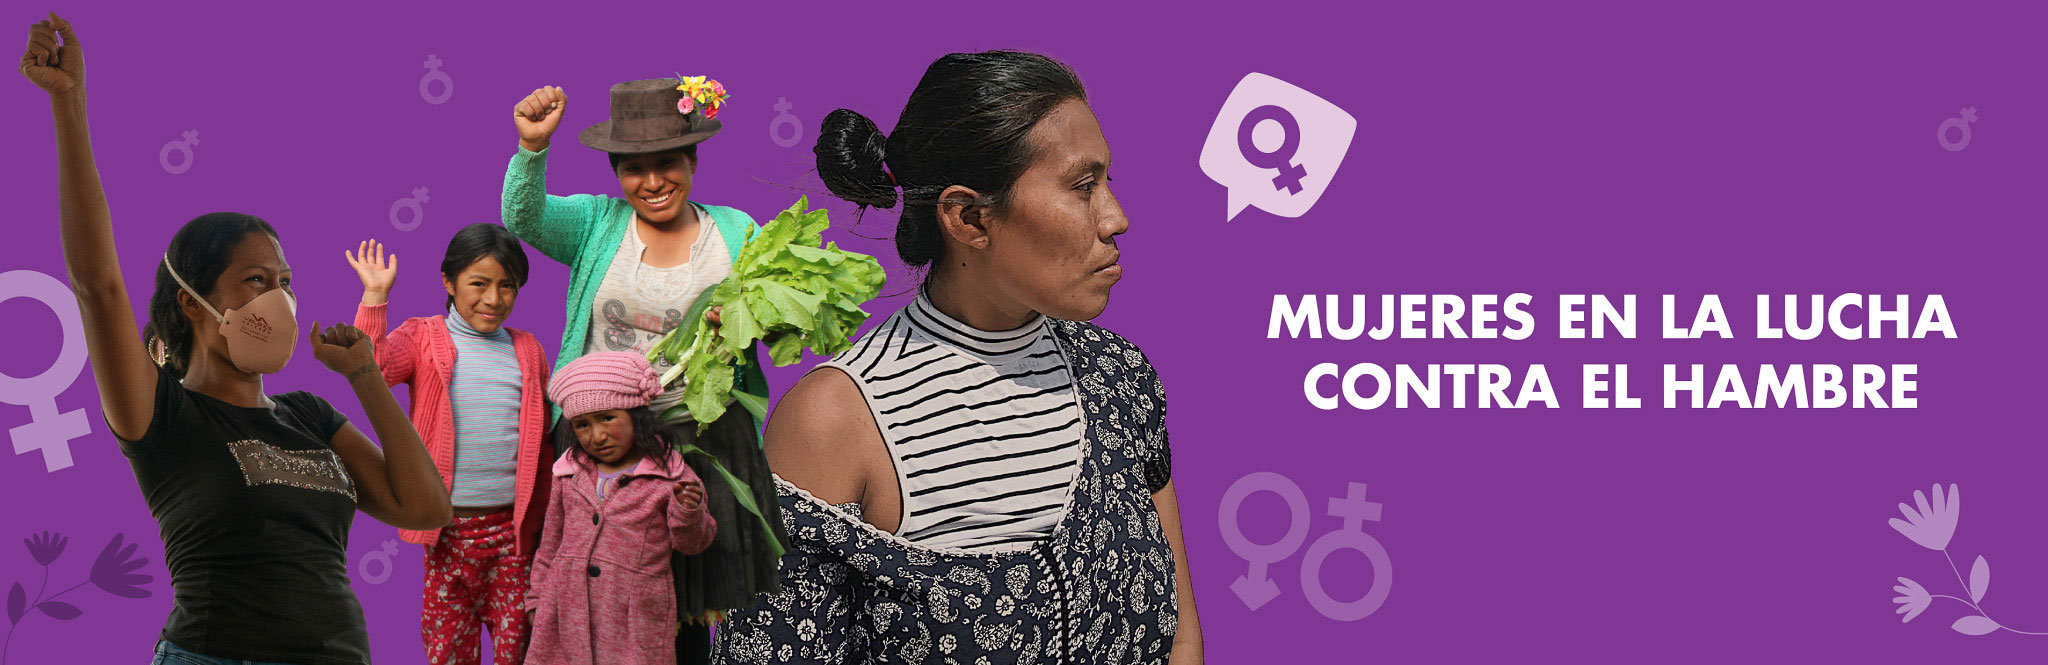 América Latina: Mujeres en la lucha contra el hambre